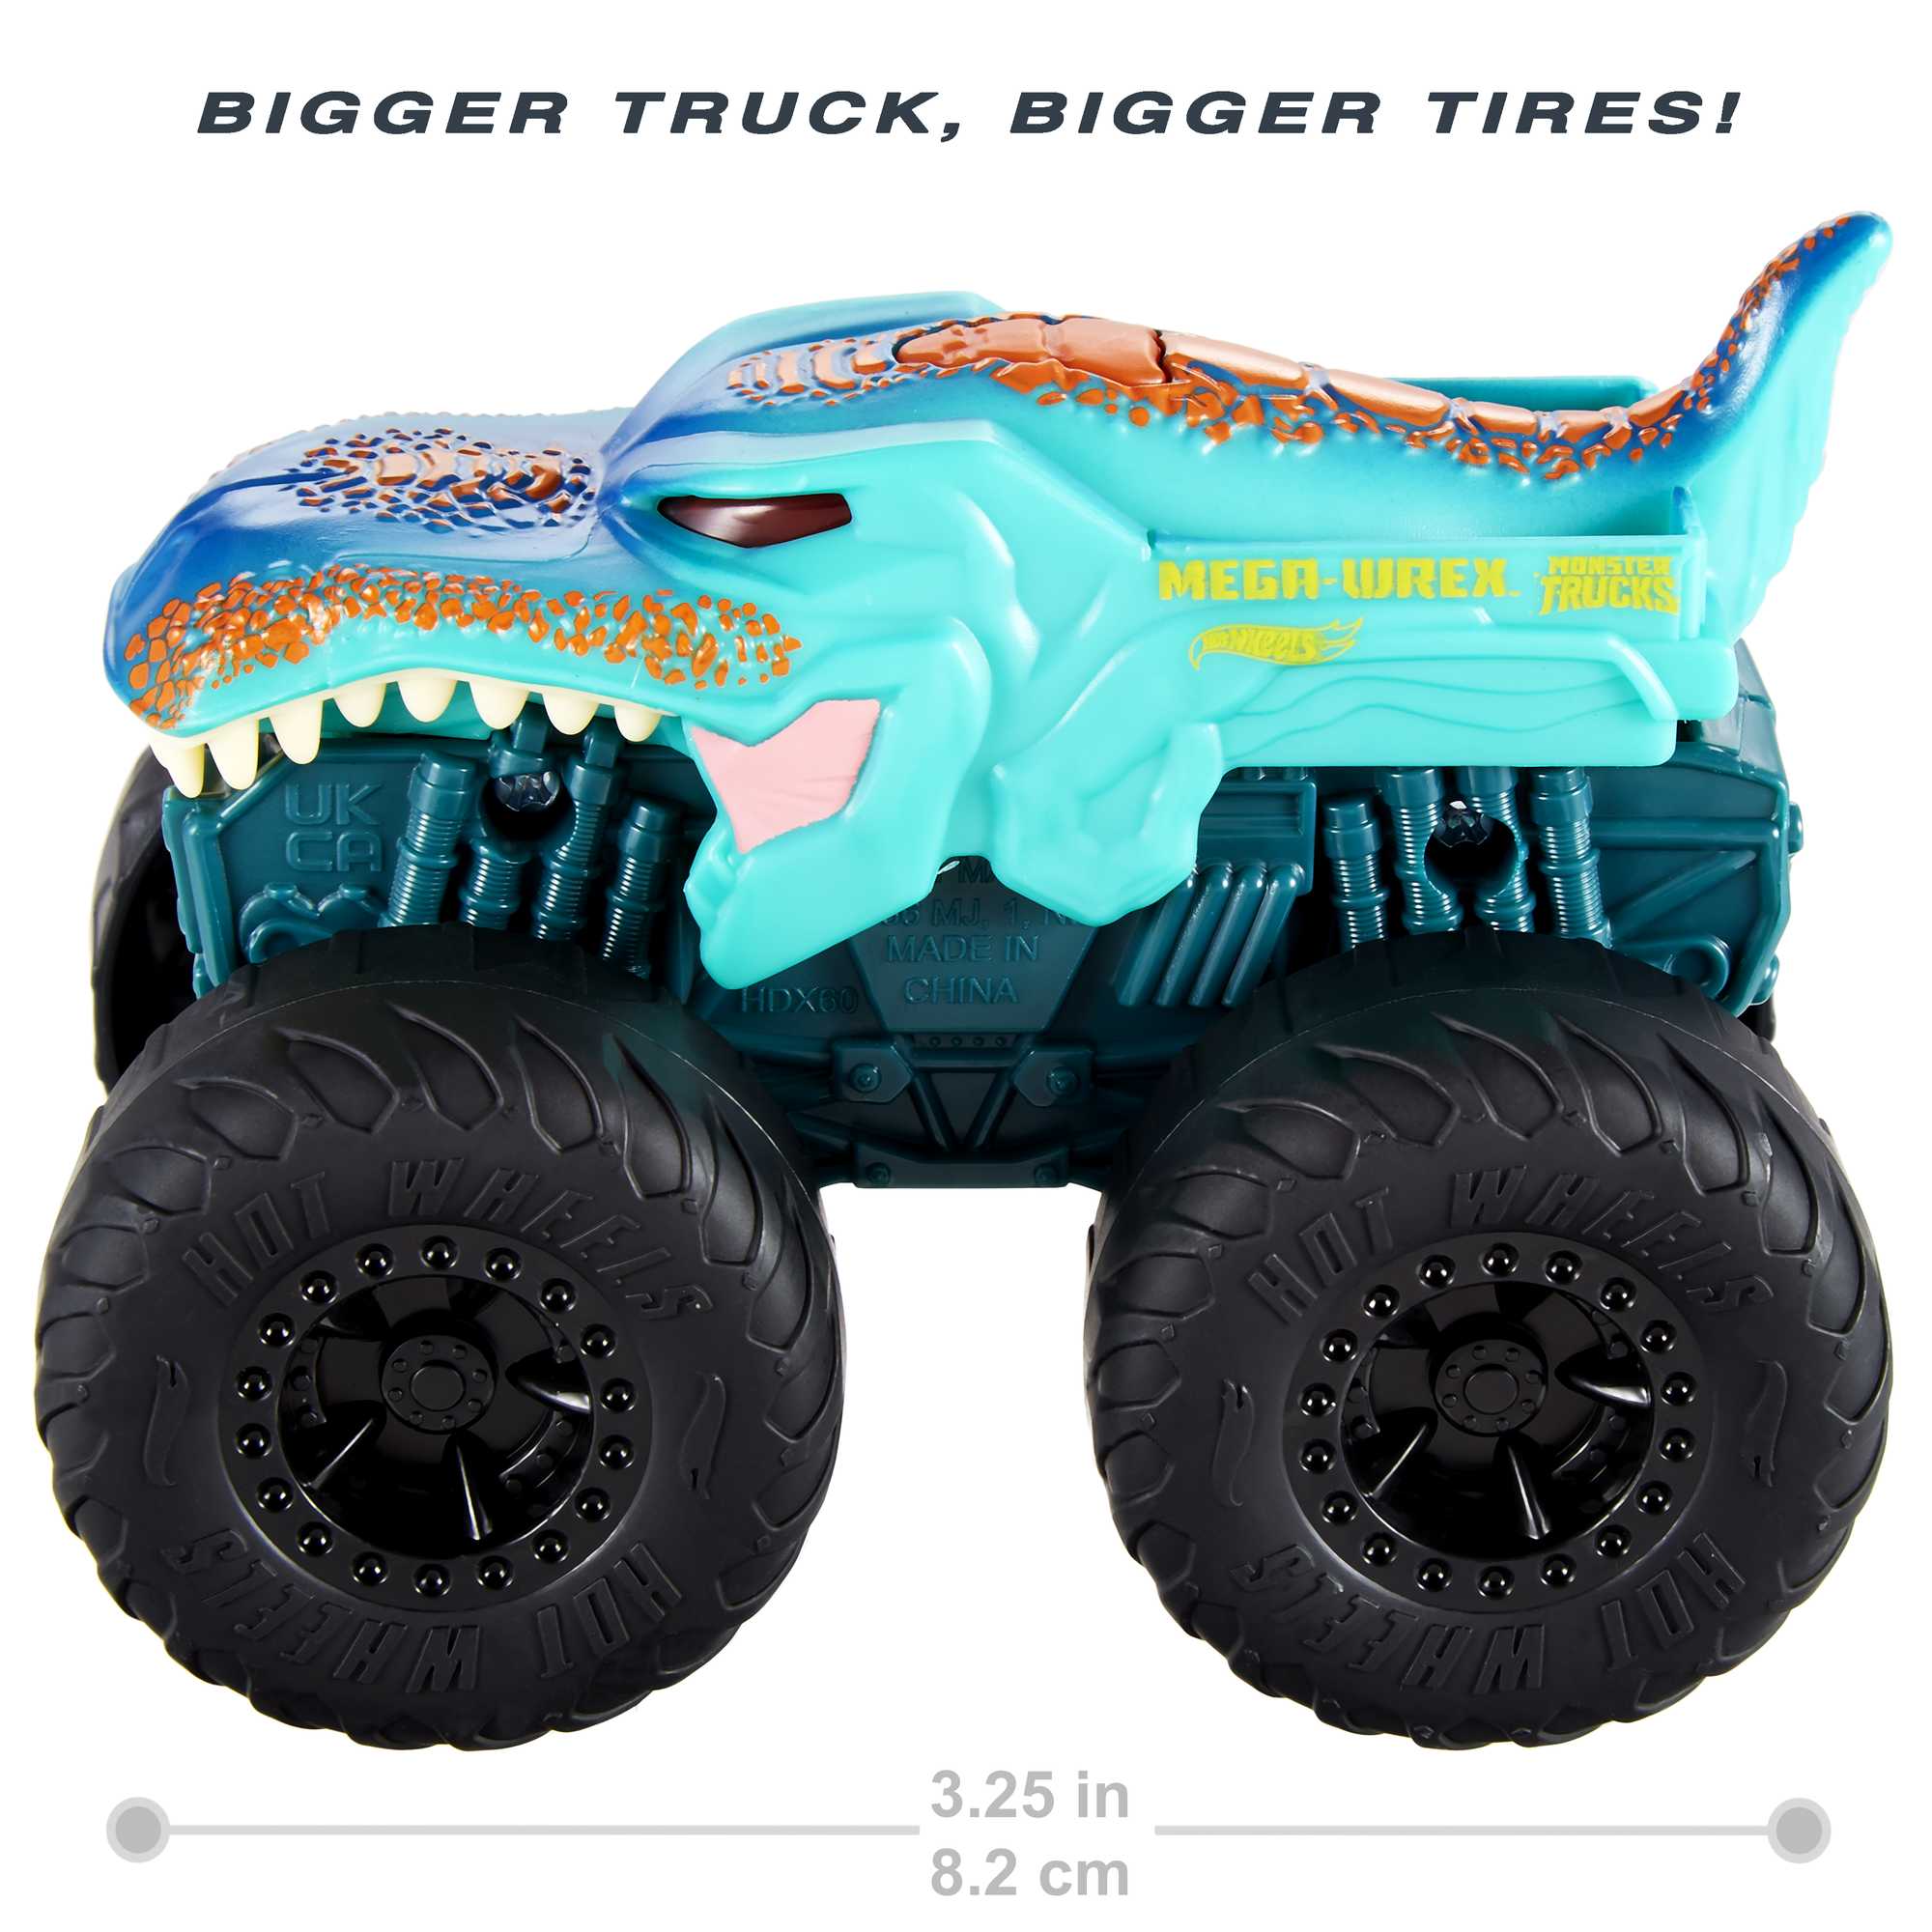 HotWheels - Mega-Wrex™ Monster Truck